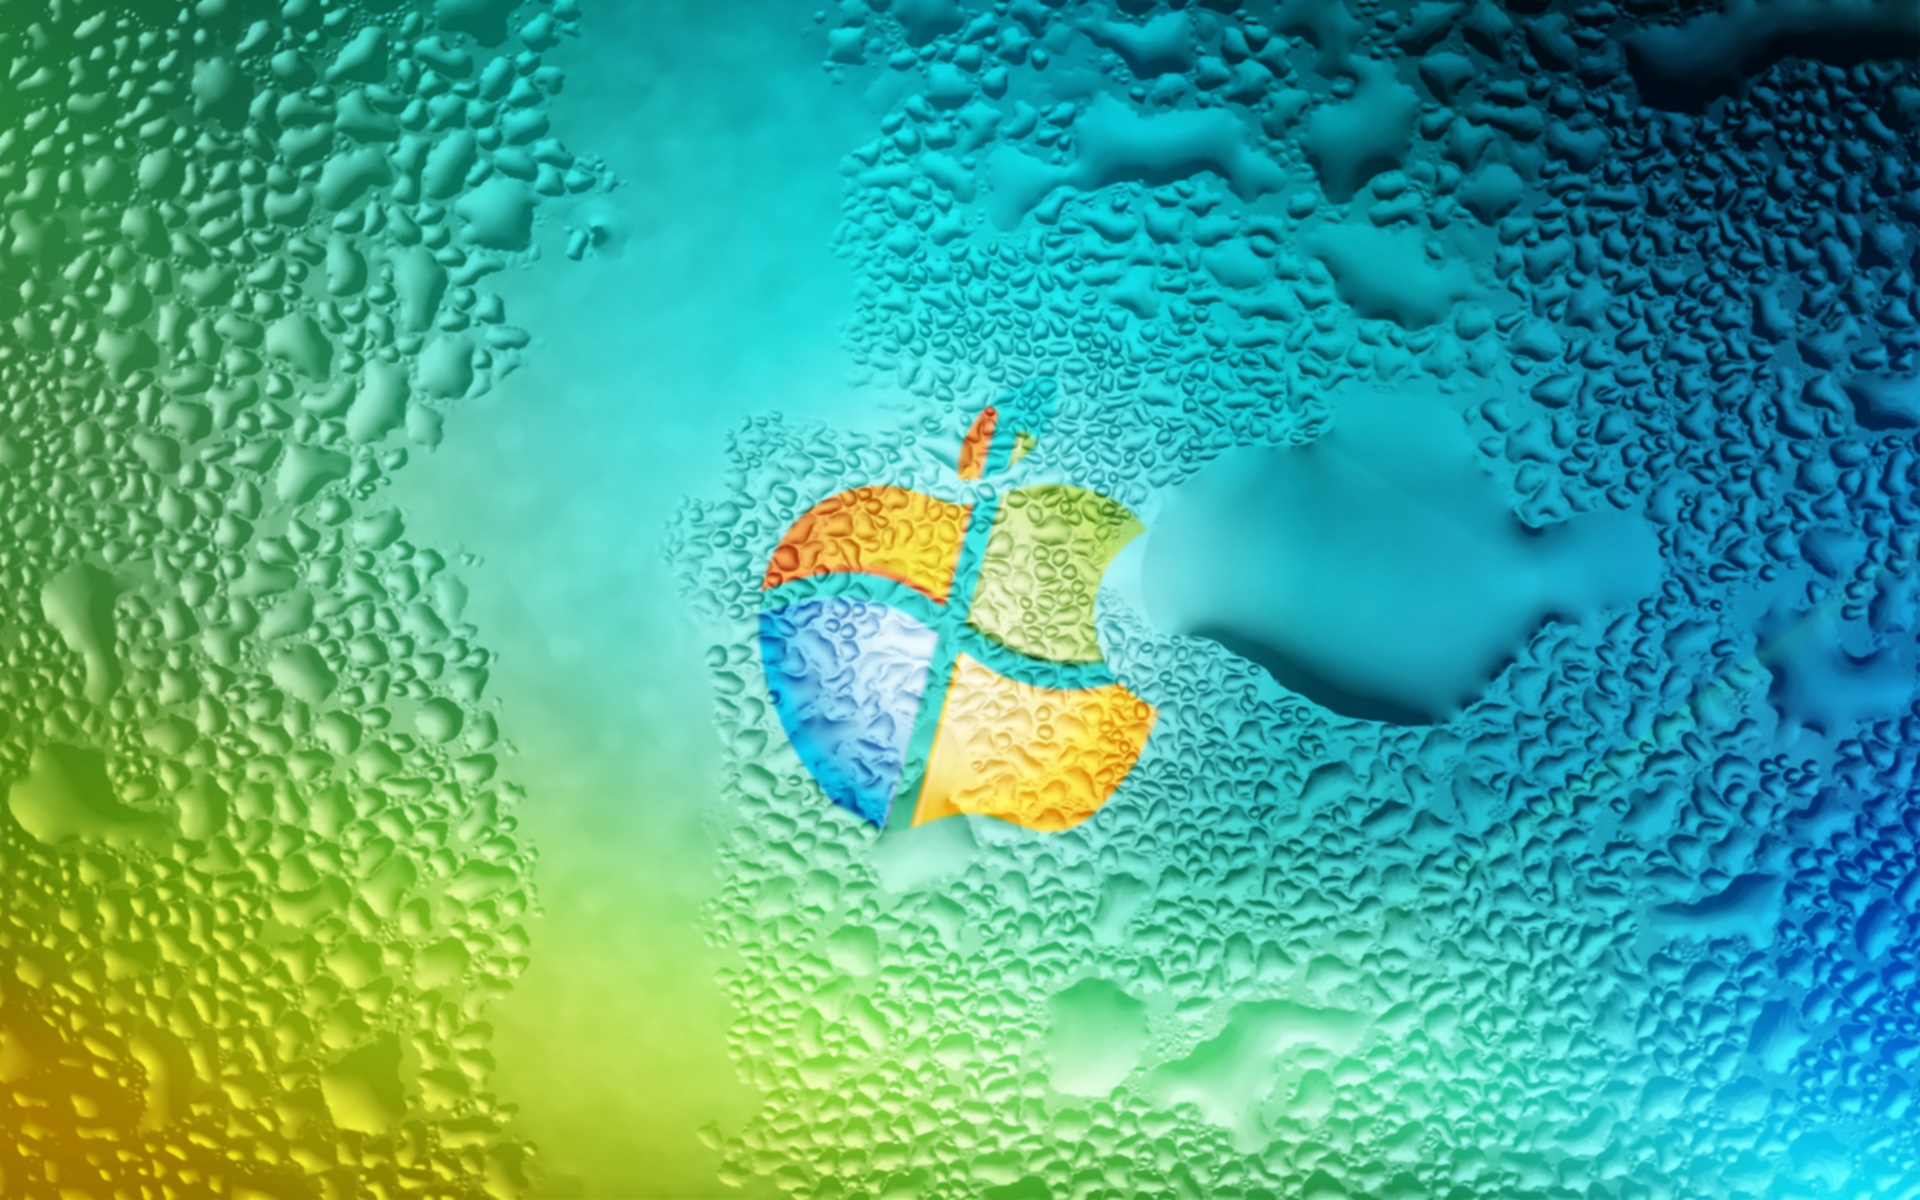 Bạn đang tìm kiếm một hình nền đẹp và cổ điển cho máy tính của mình? Hãy xem ngay ảnh nền Windows XP miễn phí tuyệt đẹp này! Với hình nền này, bạn sẽ được trở về thập niên 2000 với hình ảnh xanh chính xác và nhạc chuông đầy quen thuộc. Tải ngay và trang trí cho màn hình của bạn!